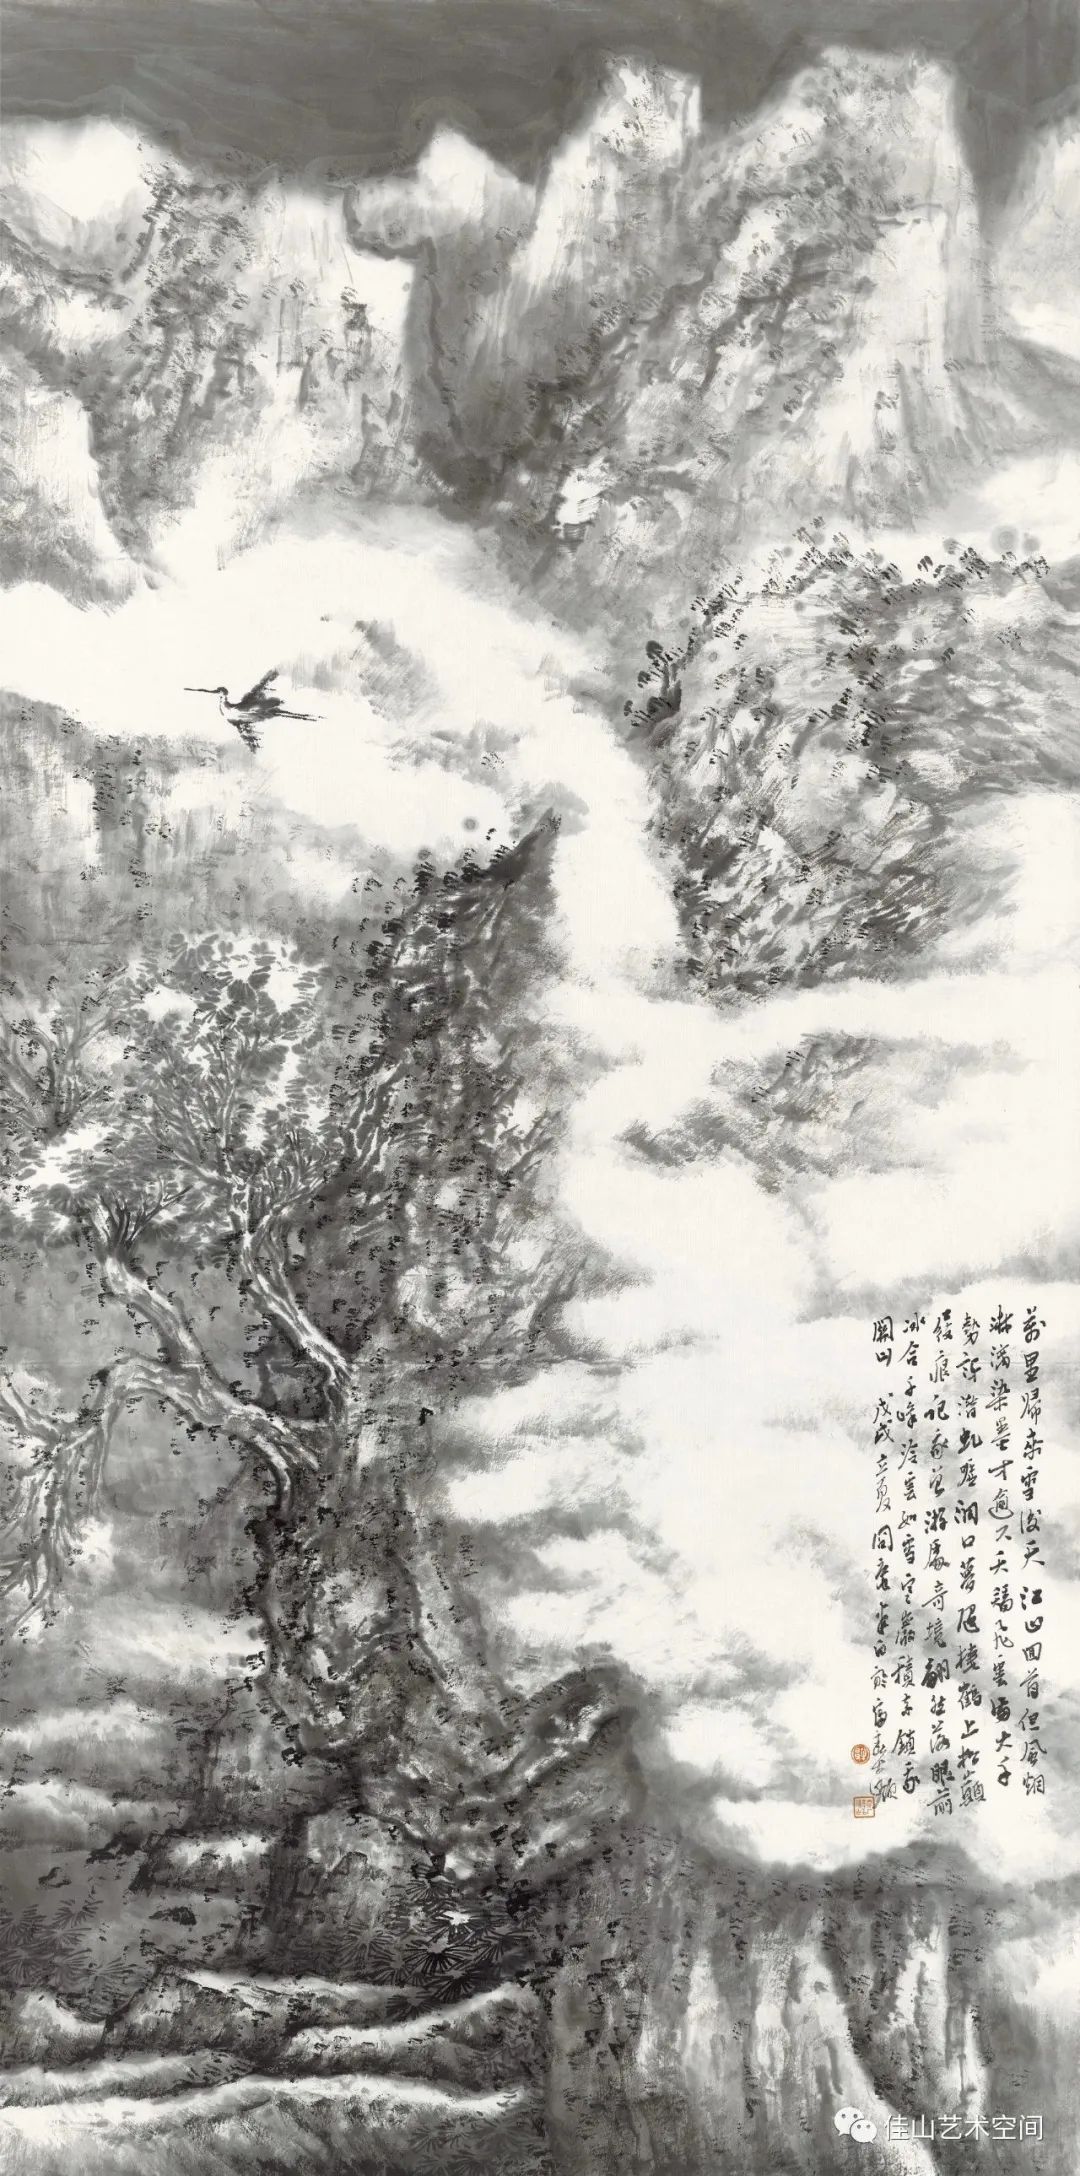 佳山佳画第四回展 | “中国画山水 · 油画风景艺术展”将于10月15日开展